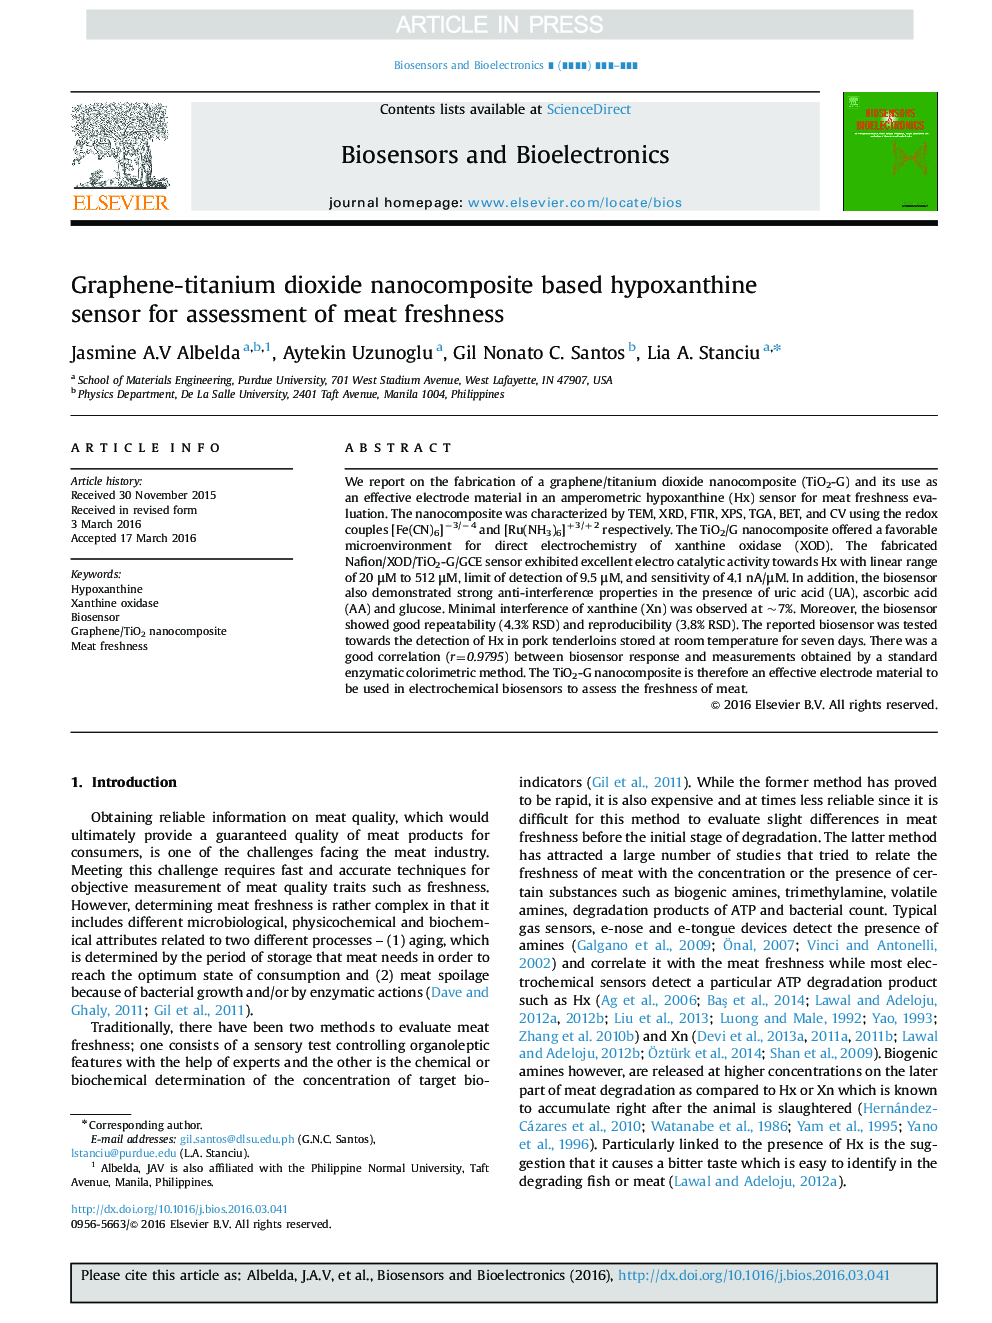 Graphene-titanium dioxide nanocomposite based hypoxanthine sensor for assessment of meat freshness